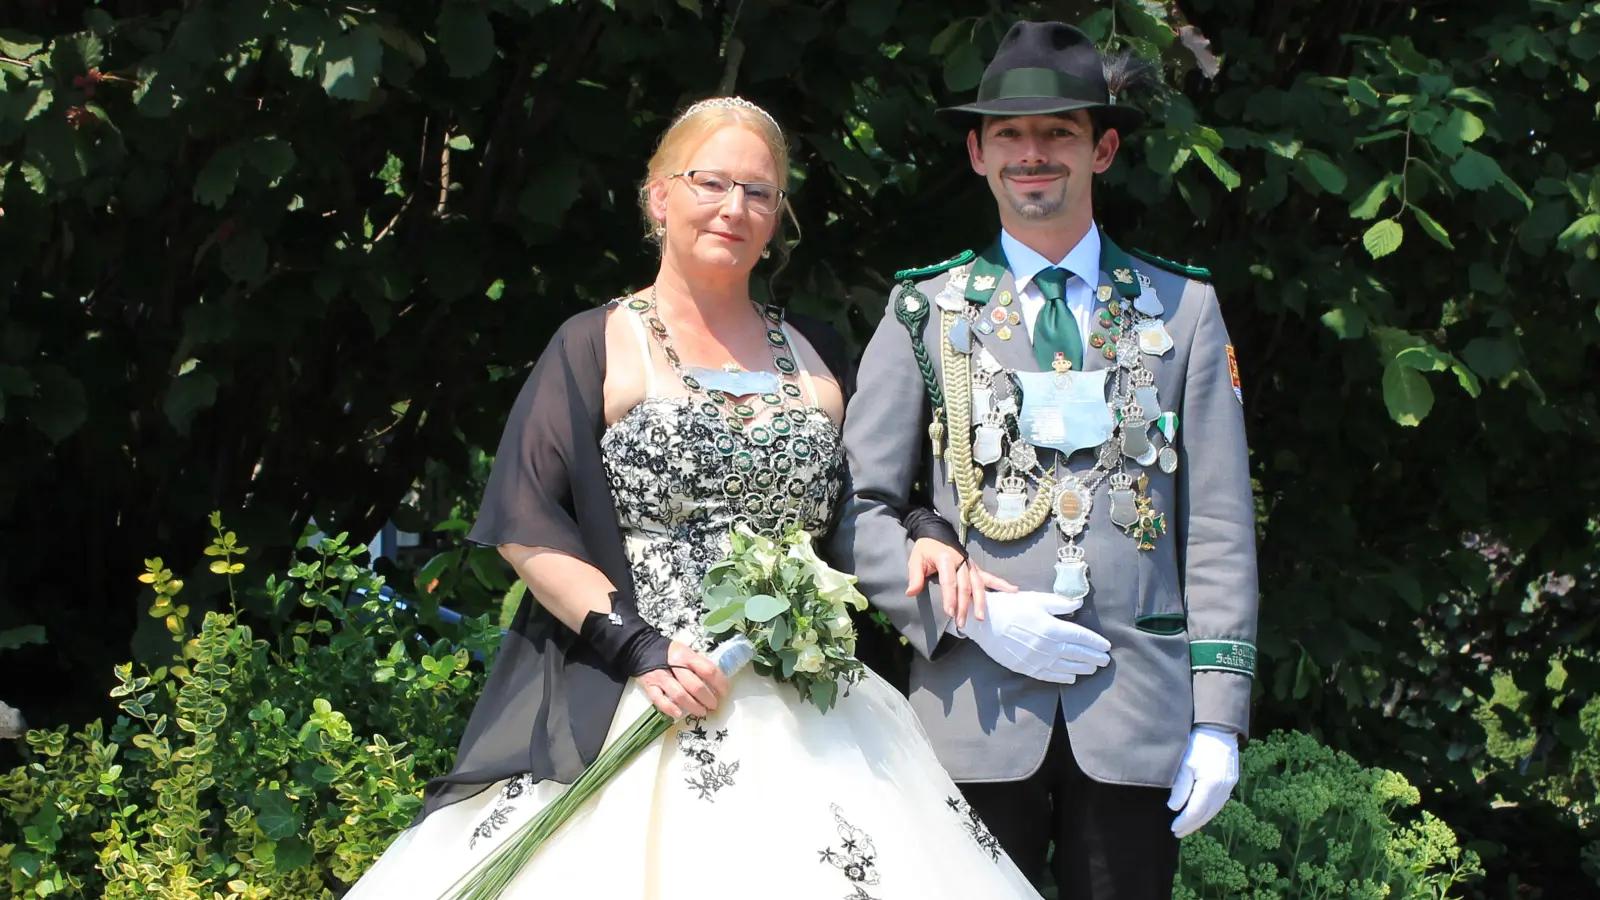 Für das Königspaar Yvonne Rauscher und Marcel Gerhards heißt es Abschiednehmen.  (Foto: Schützenverein Lauenförde)